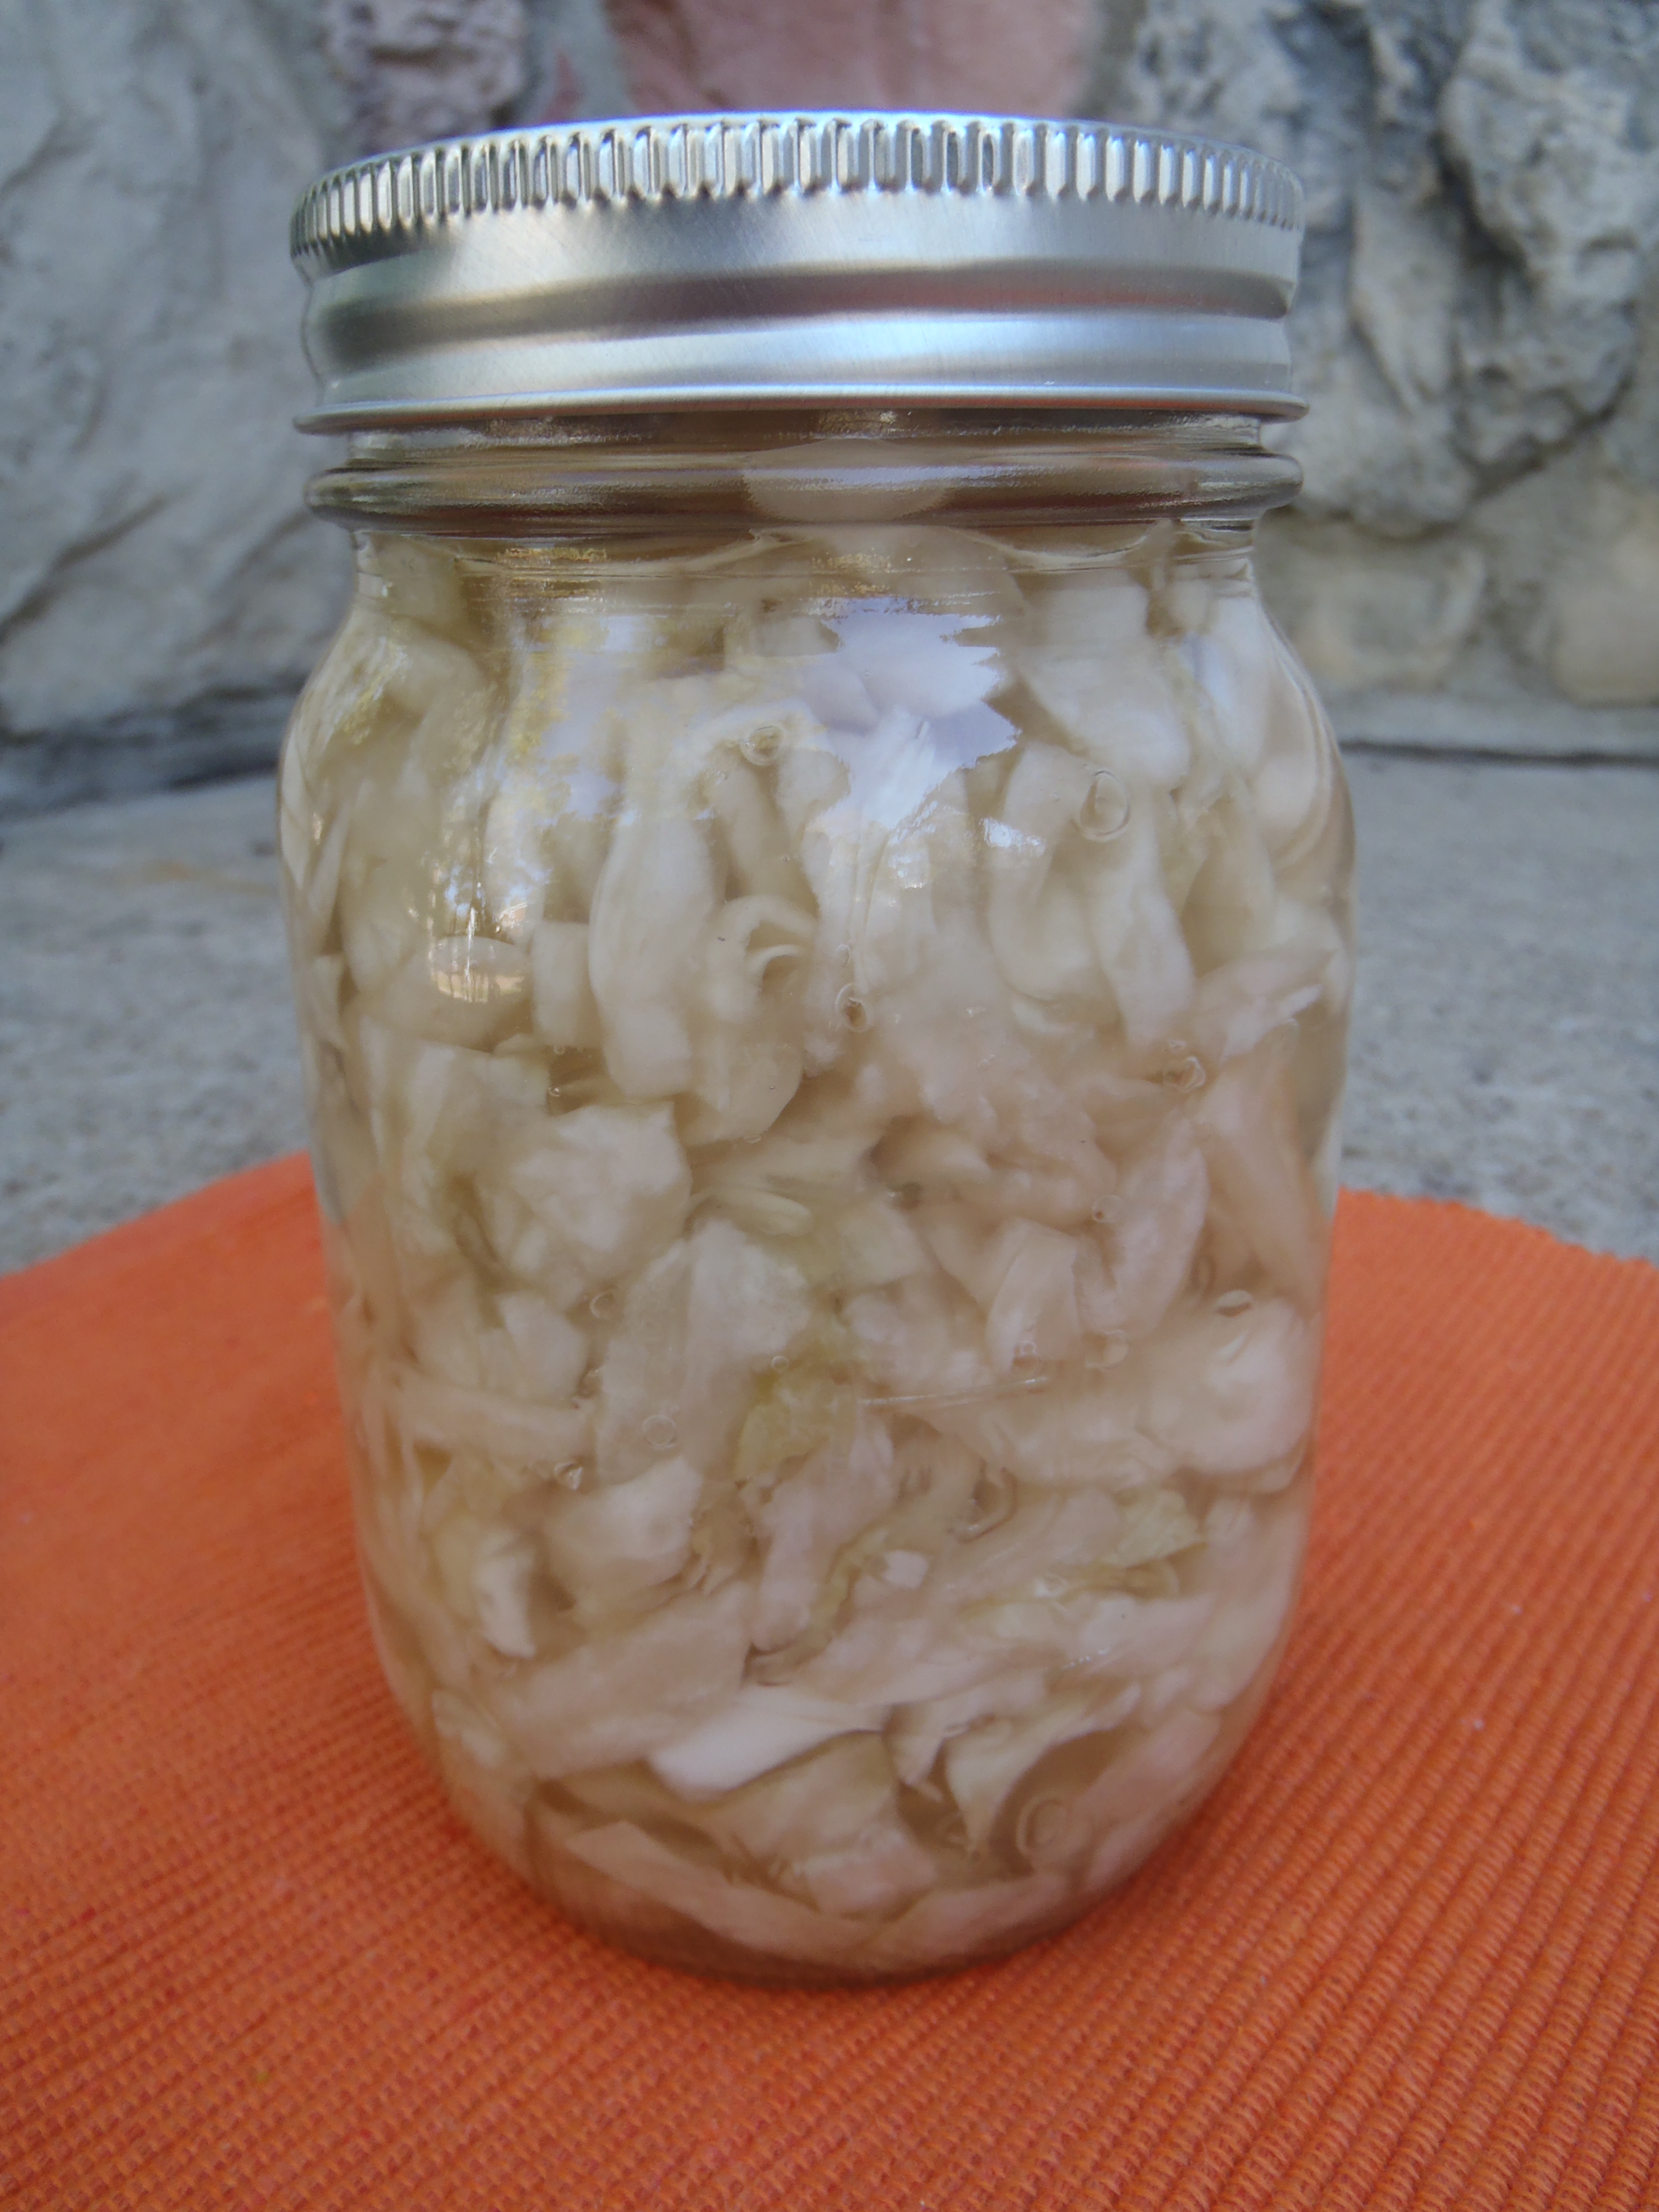 Naturally fermented sauerkraut